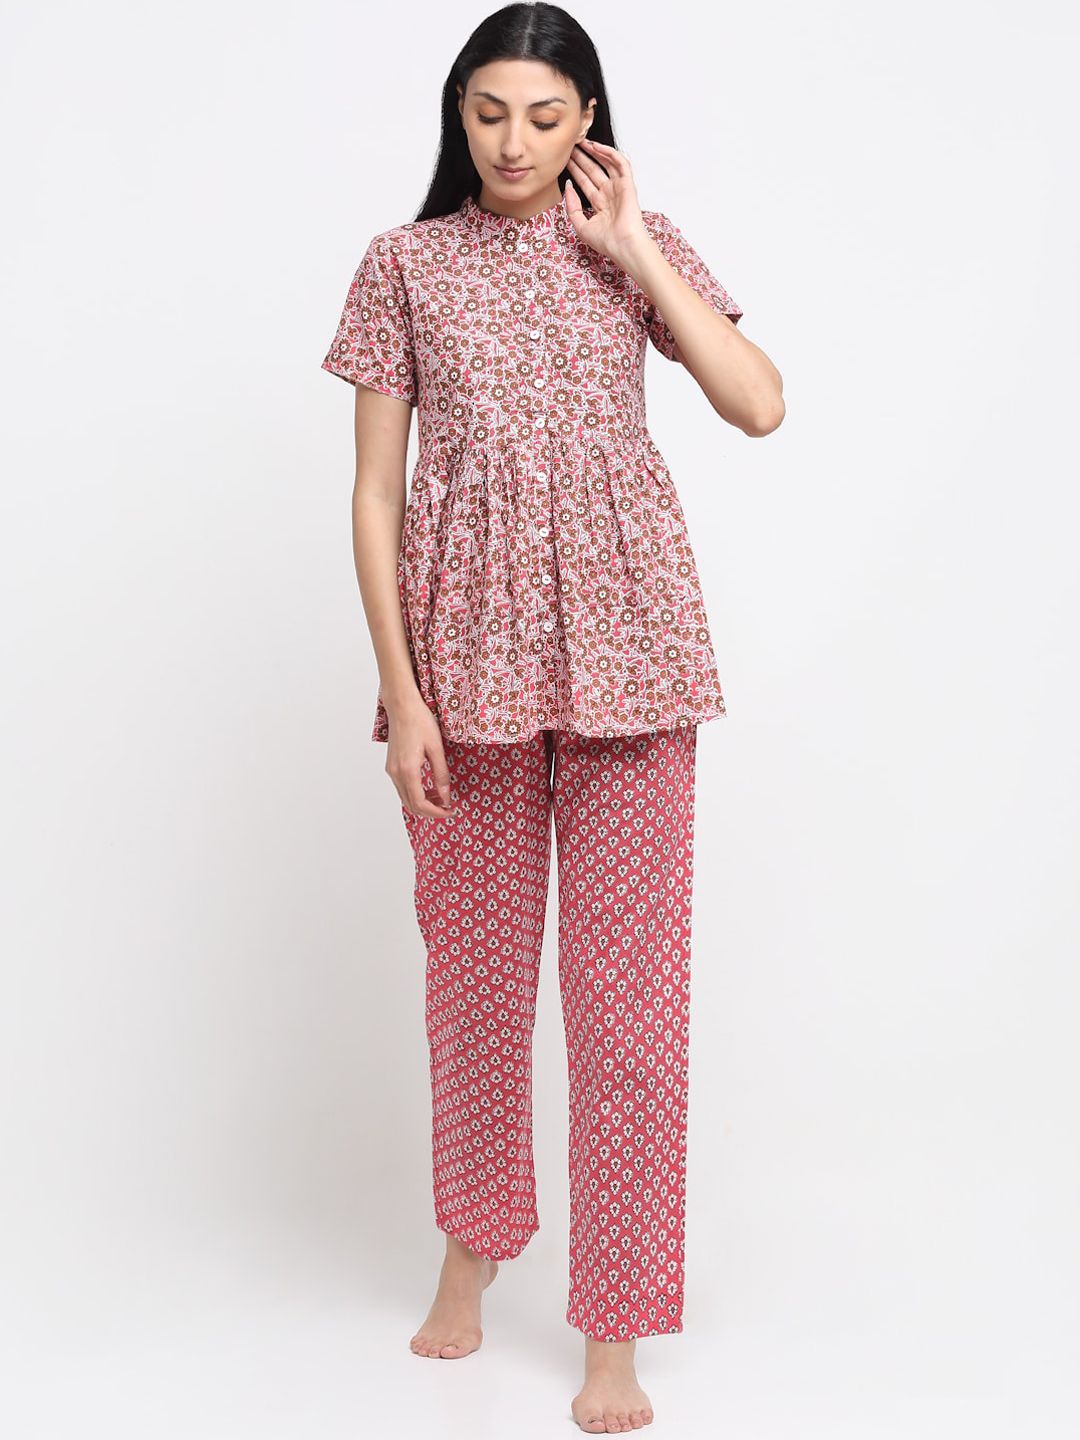 NEUDIS Women Pink & Brown Cotton Printed Nightsuit Price in India